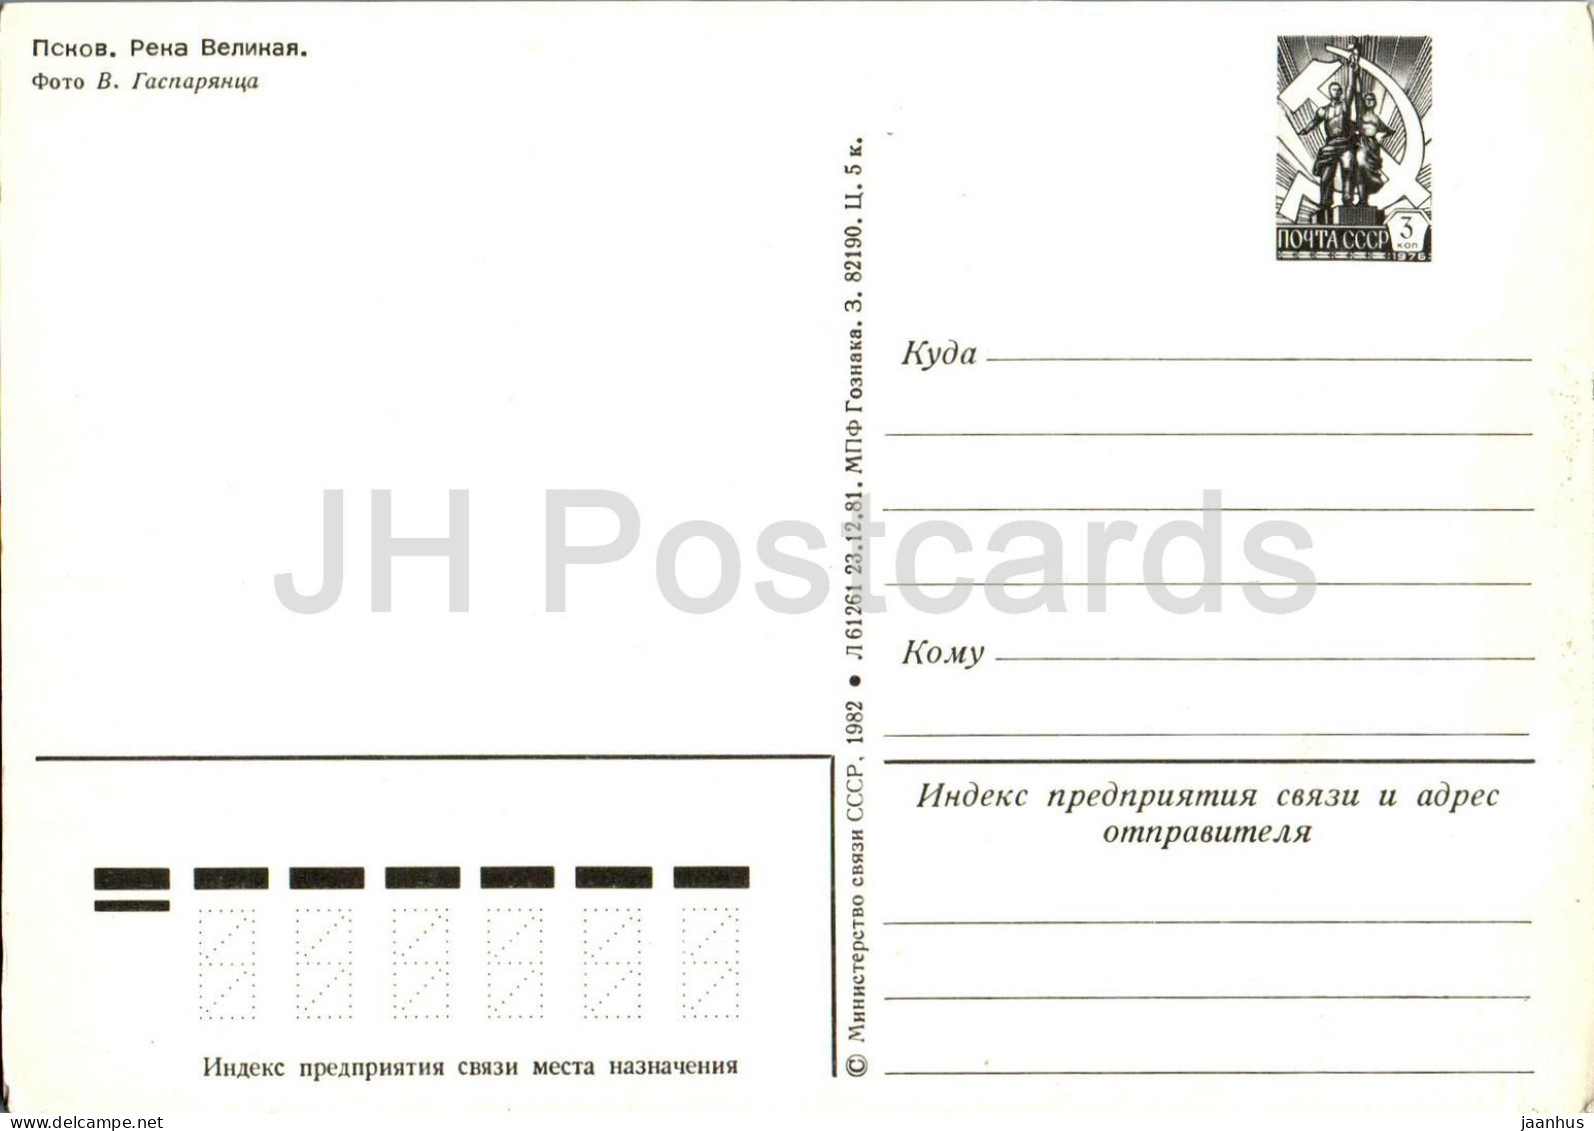 Pskov - Velikaya River - Postal Stationery - 1982 - Russia USSR - Unused - Russland